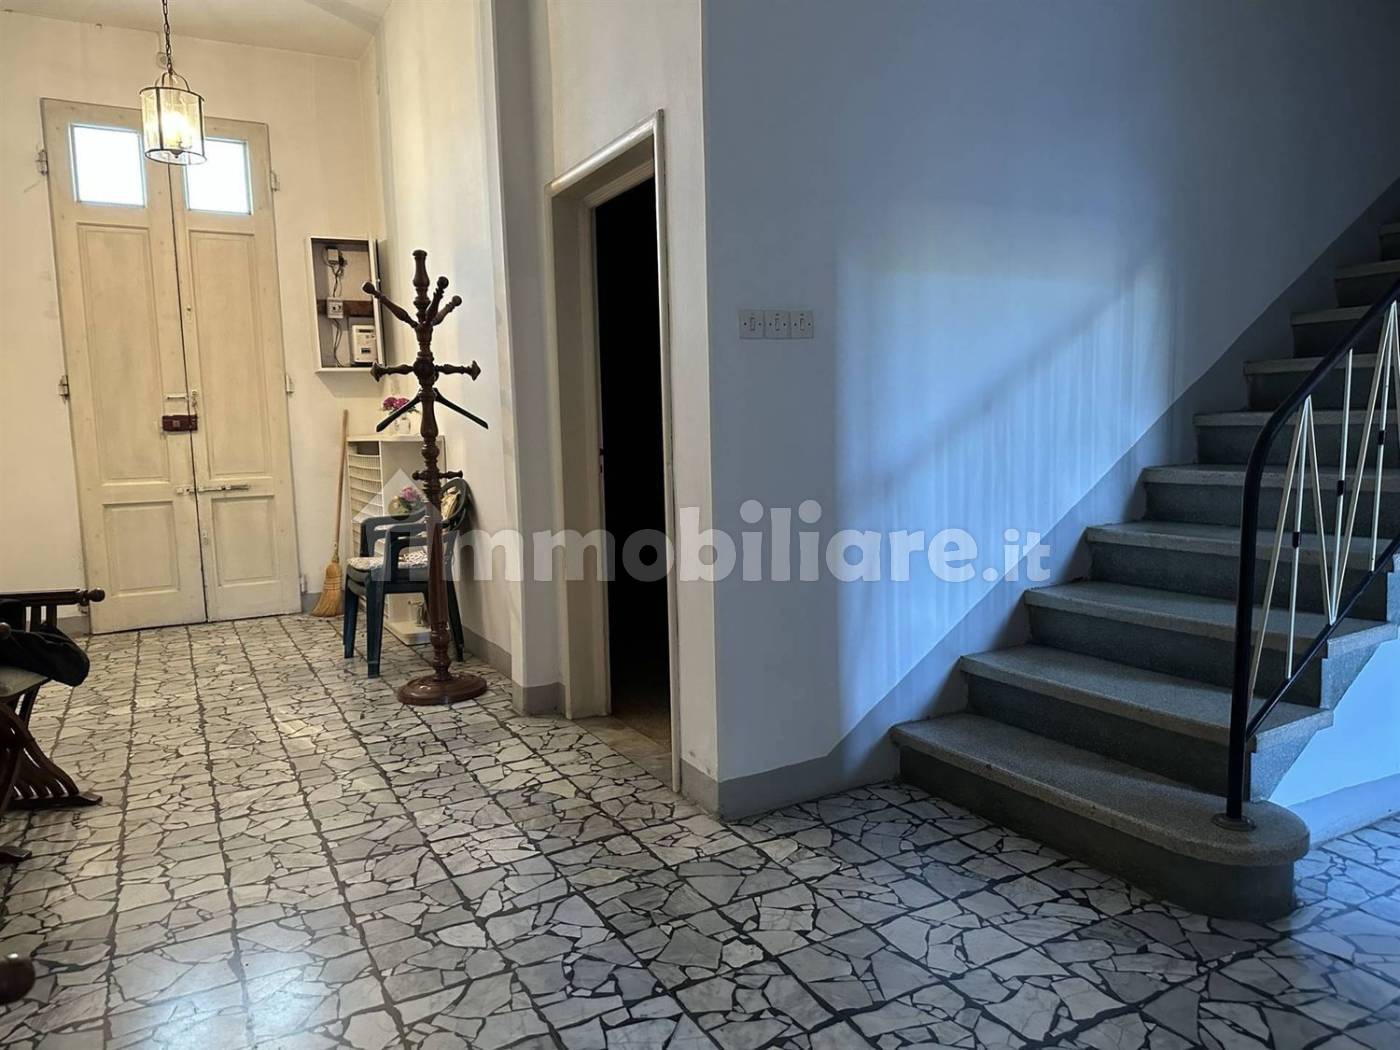 Case in vendita in zona San Giorgio a Colonica, Prato - Immobiliare.it